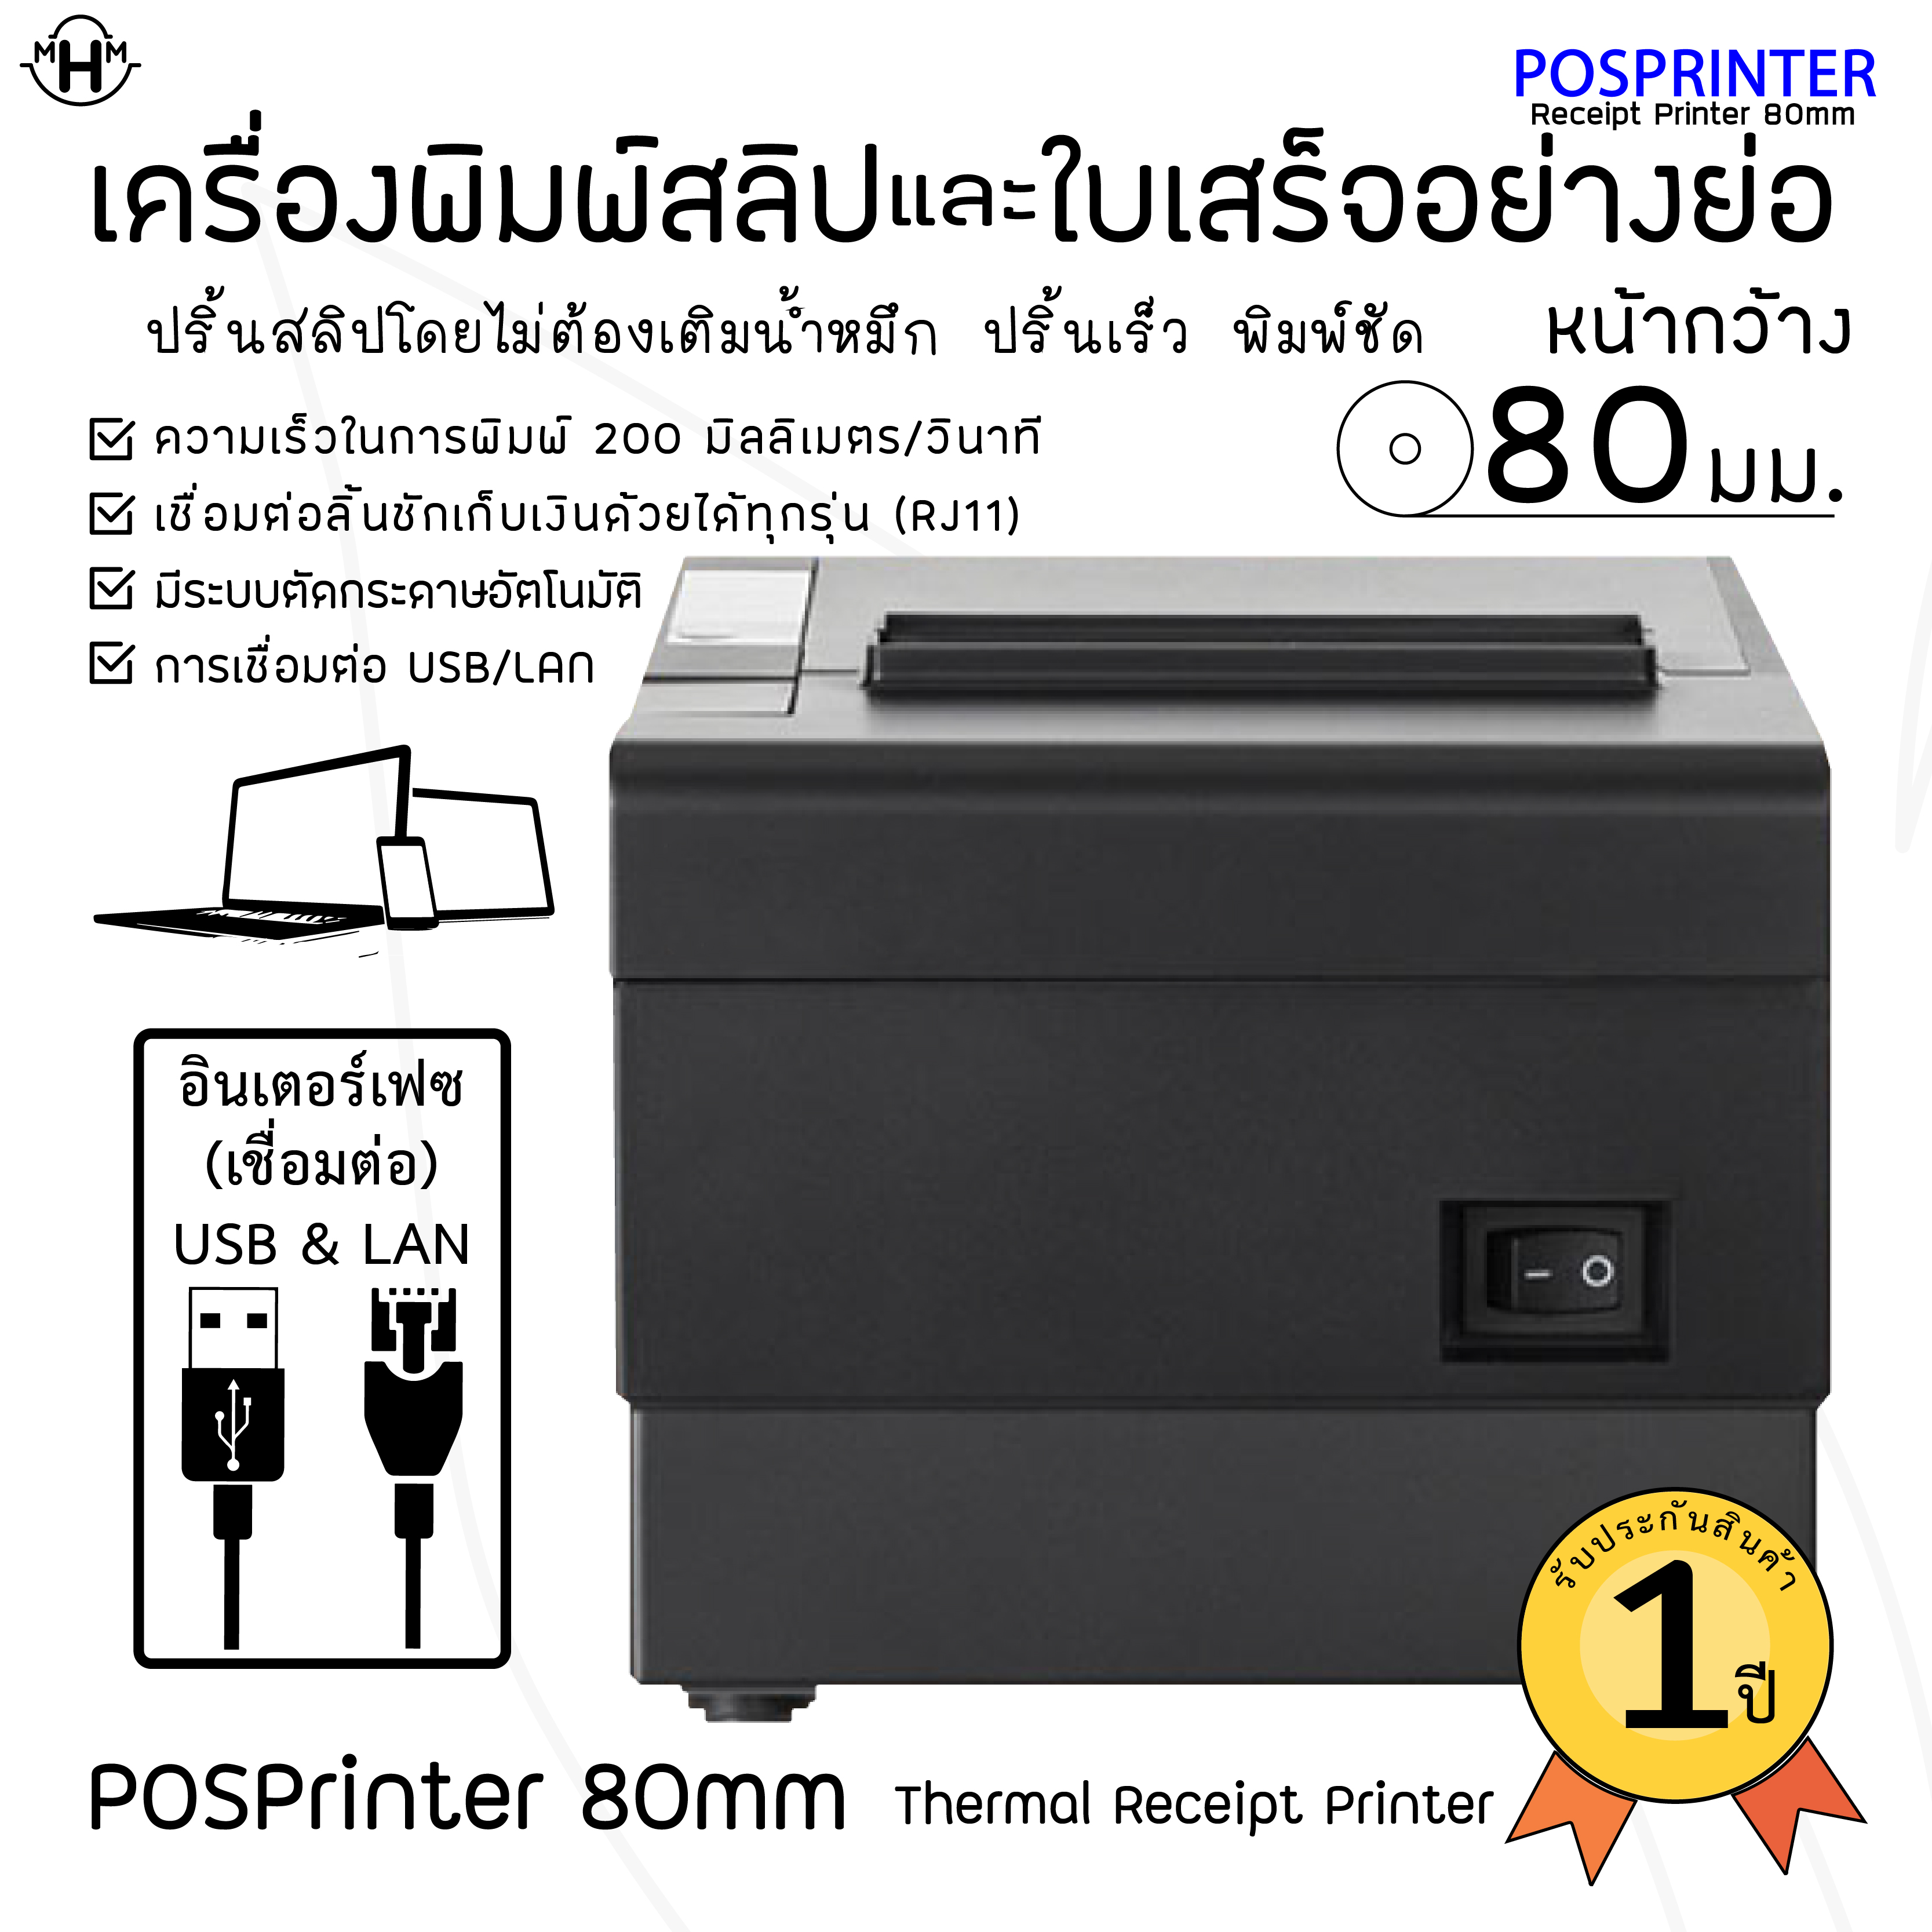 เครื่องพิมพ์ใบเสร็จความร้อน POSPRINTER รุ่น M80 รองรับการพิมพ์ 80 มม. พิมเร็ว 200 มม./วิ การเชื่อมต่อ USB&LAN พร้อมระบบตัดกระดาษอัตโนมัติ